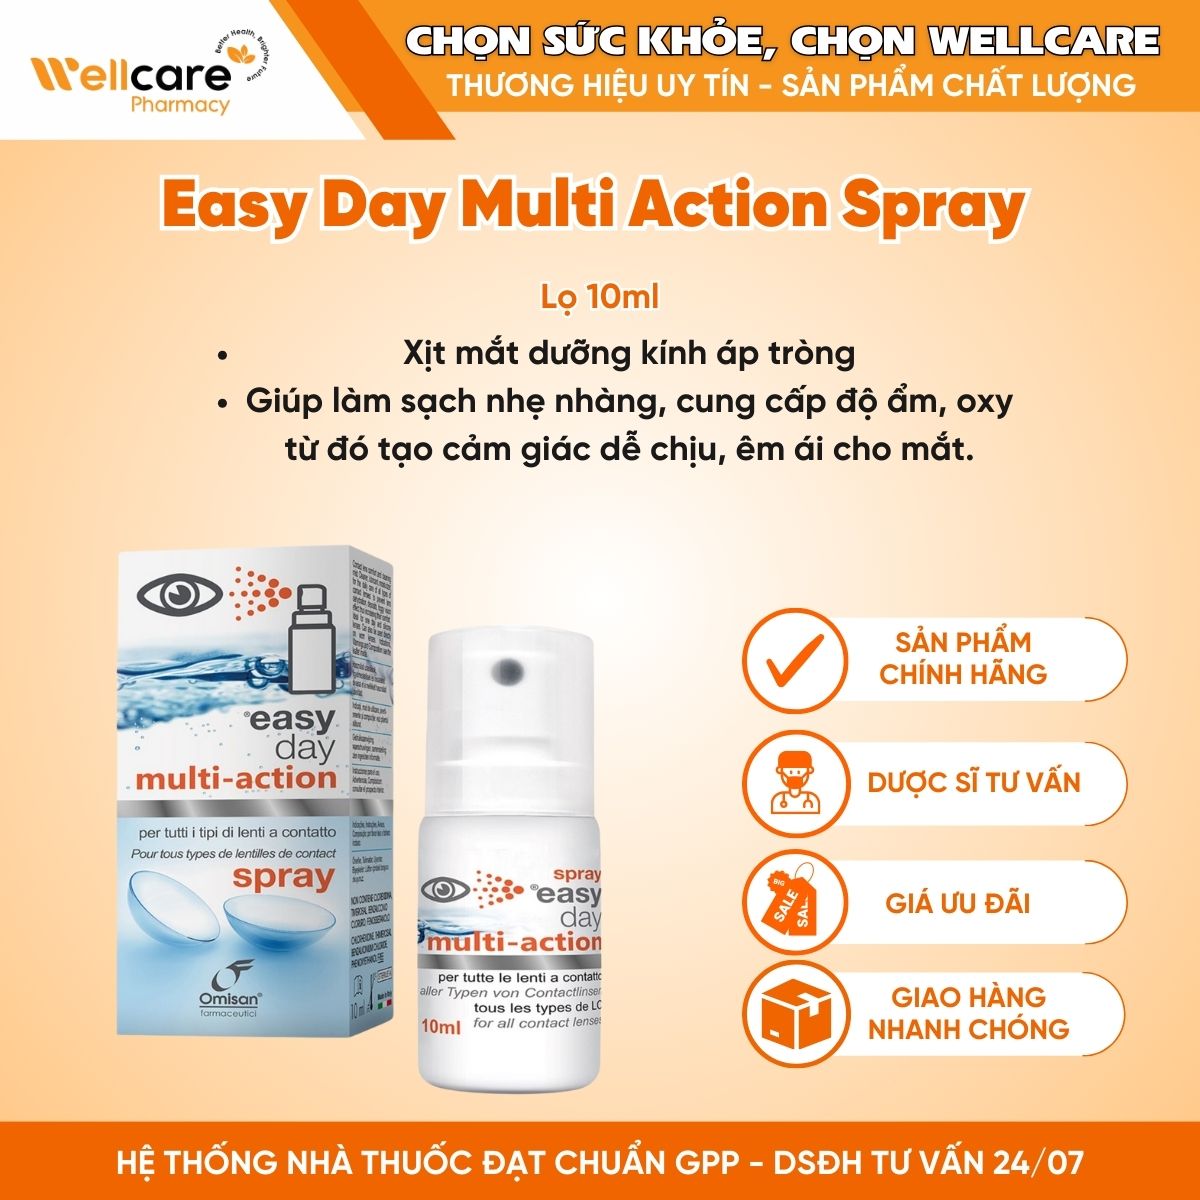 Easy Day Multi Action Spray – Xịt mắt dưỡng kính áp tròng (Lọ 10ml)